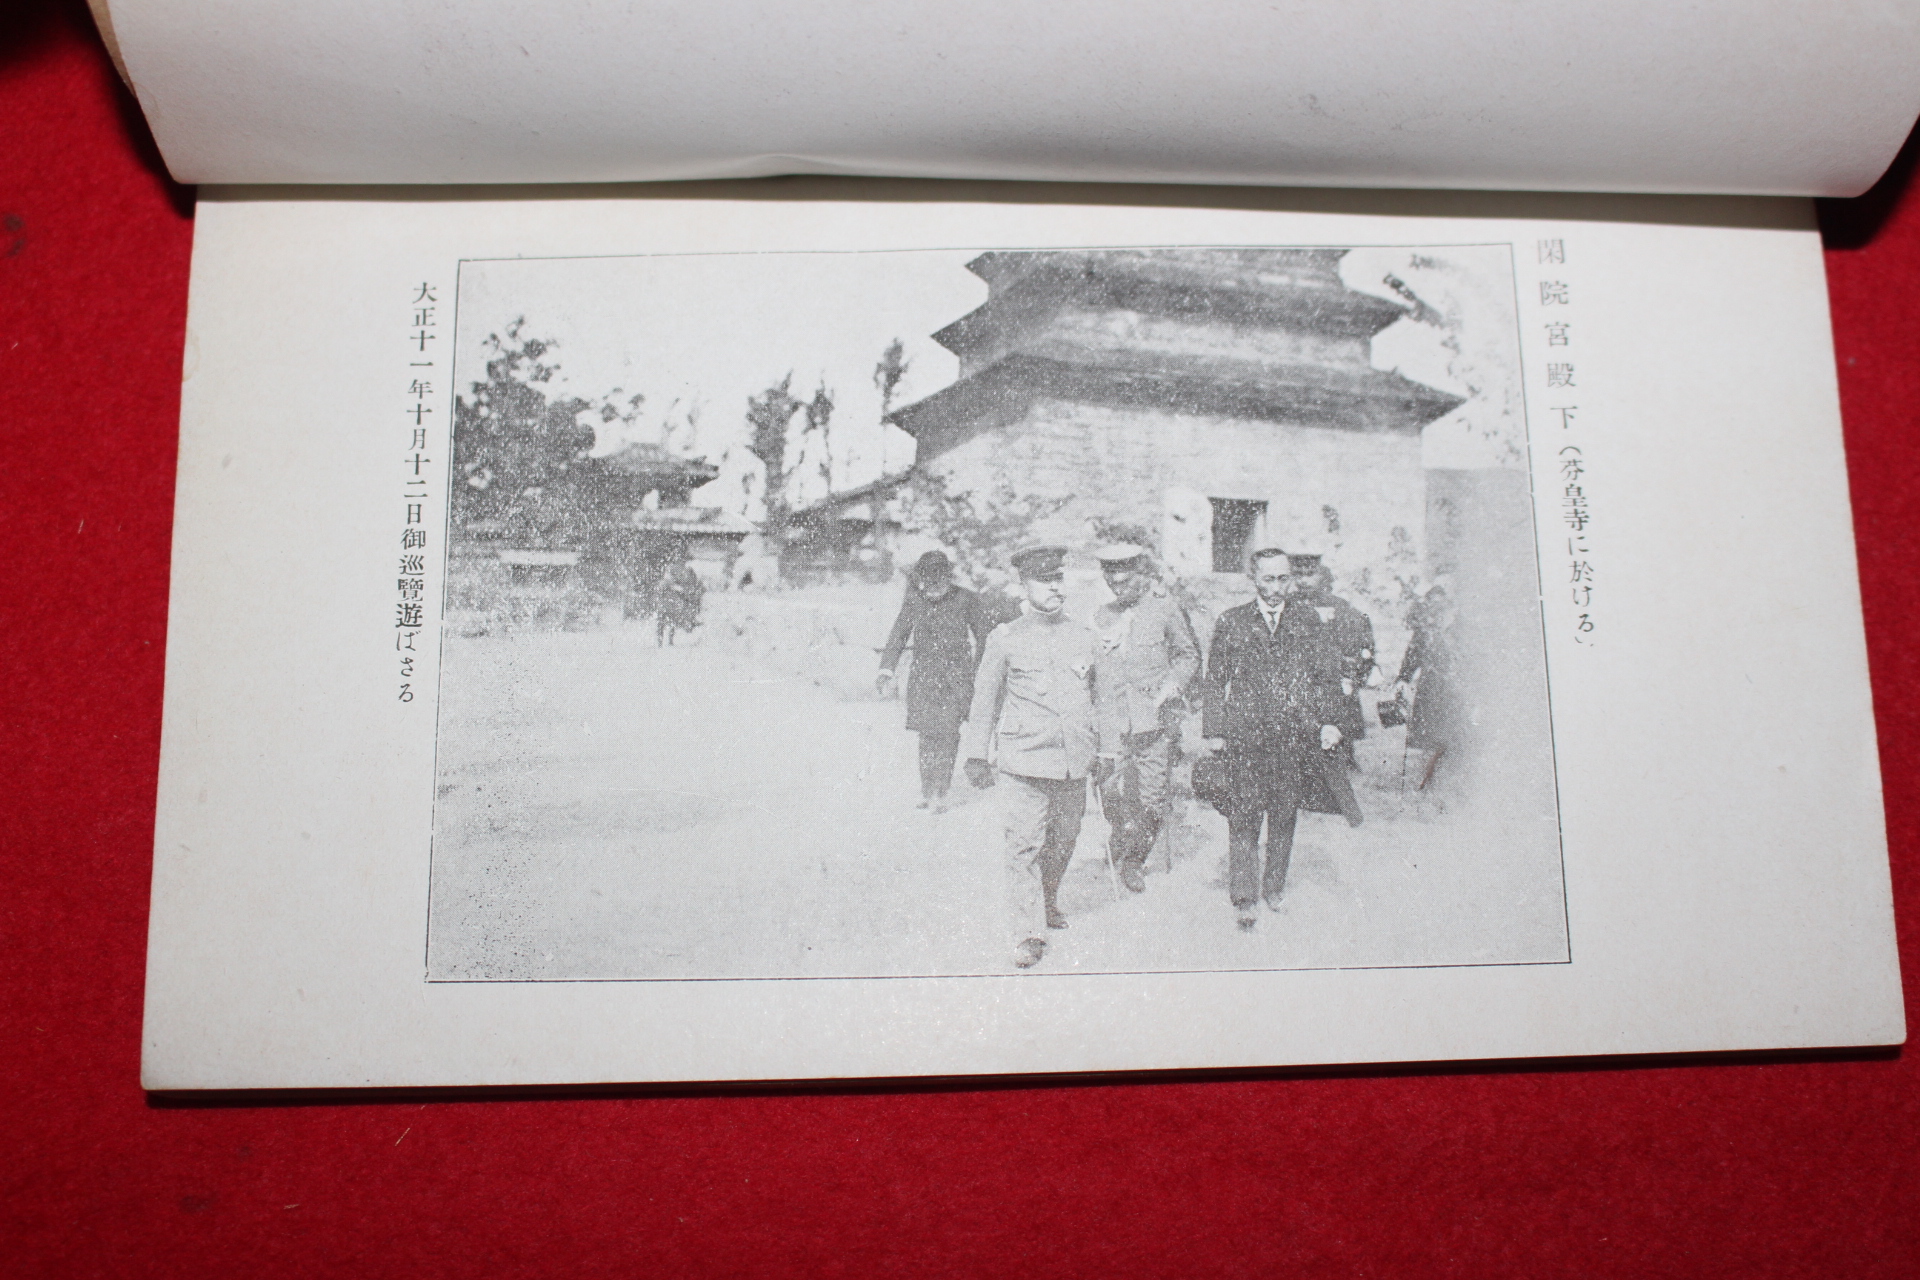 1937년 신라구도 경주고적안내(慶州古跡案內)